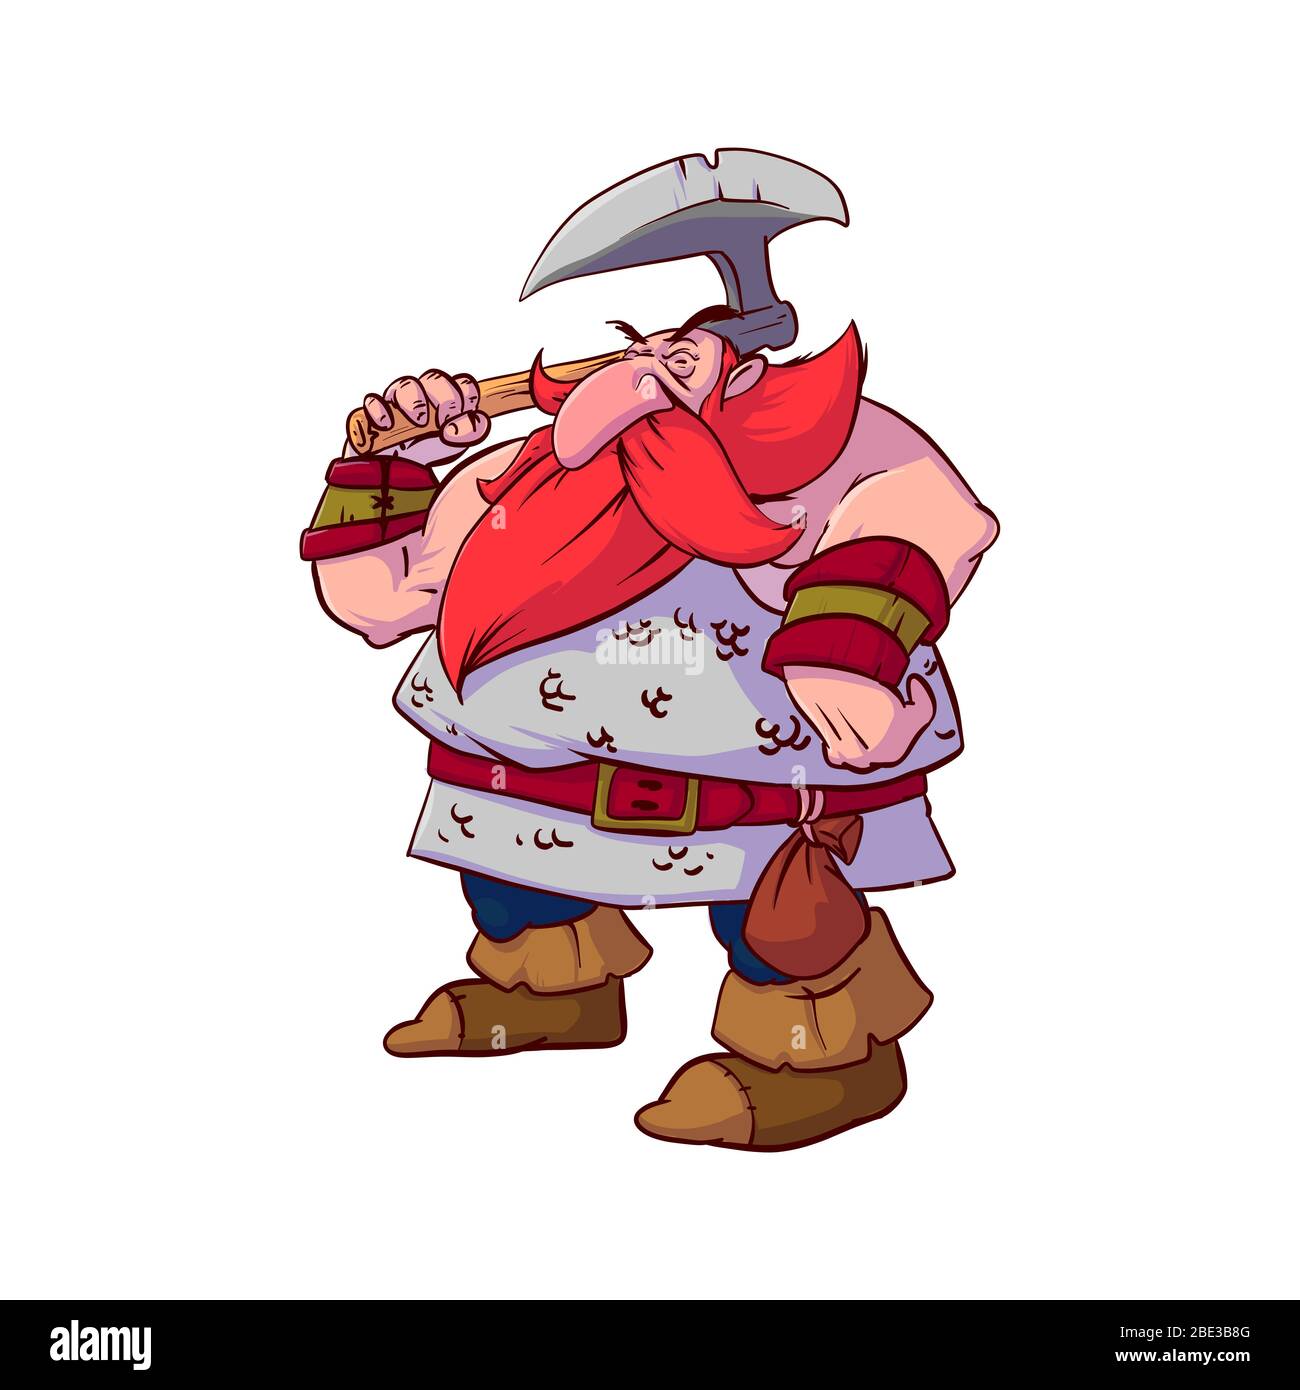 Illustrazione vettoriale colorata di un guerriero nano con cartoni animati, con capelli rossi e barba, indossando una corazza a catena, armato di un'ascia da battaglia gigante. Illustrazione Vettoriale